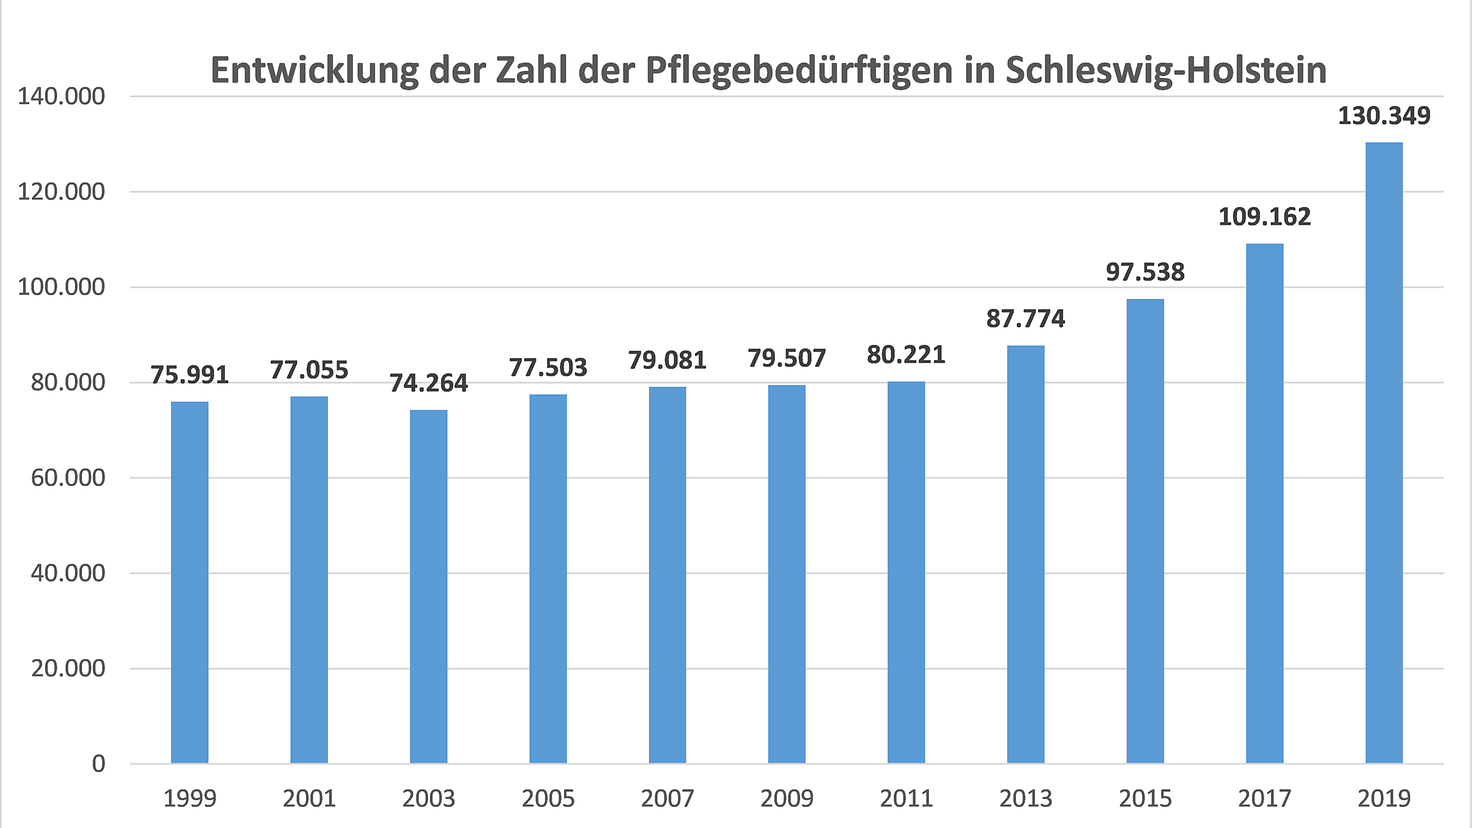 Grafik über die Entwicklung der Zahl der Pflegebedürftigen in Schleswig-Holstein